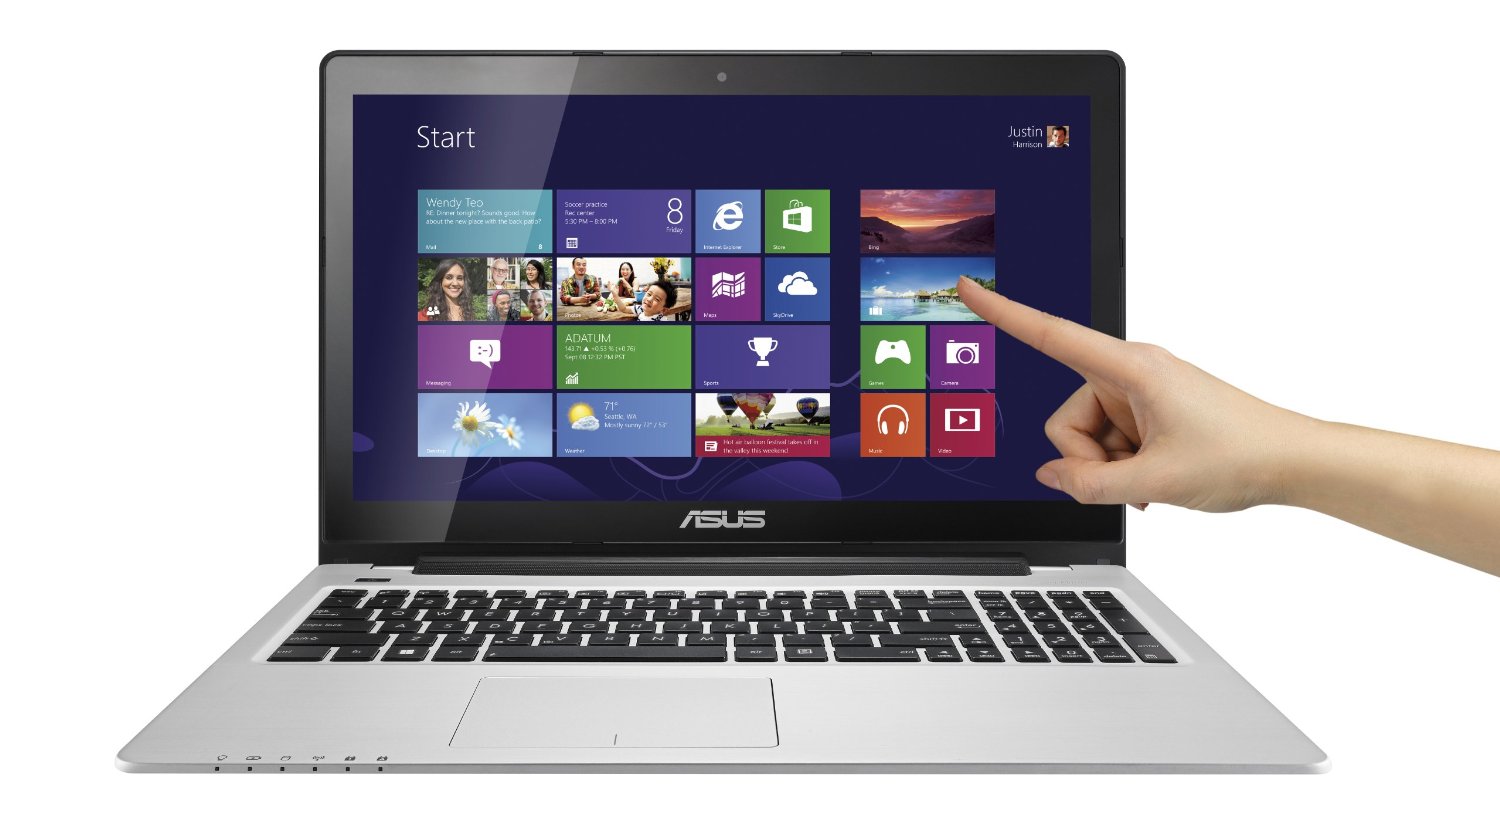 Asus Vivobook S550CA là mẫu laptop màn hình cảm ứng nhanh chóng và tiện lợi